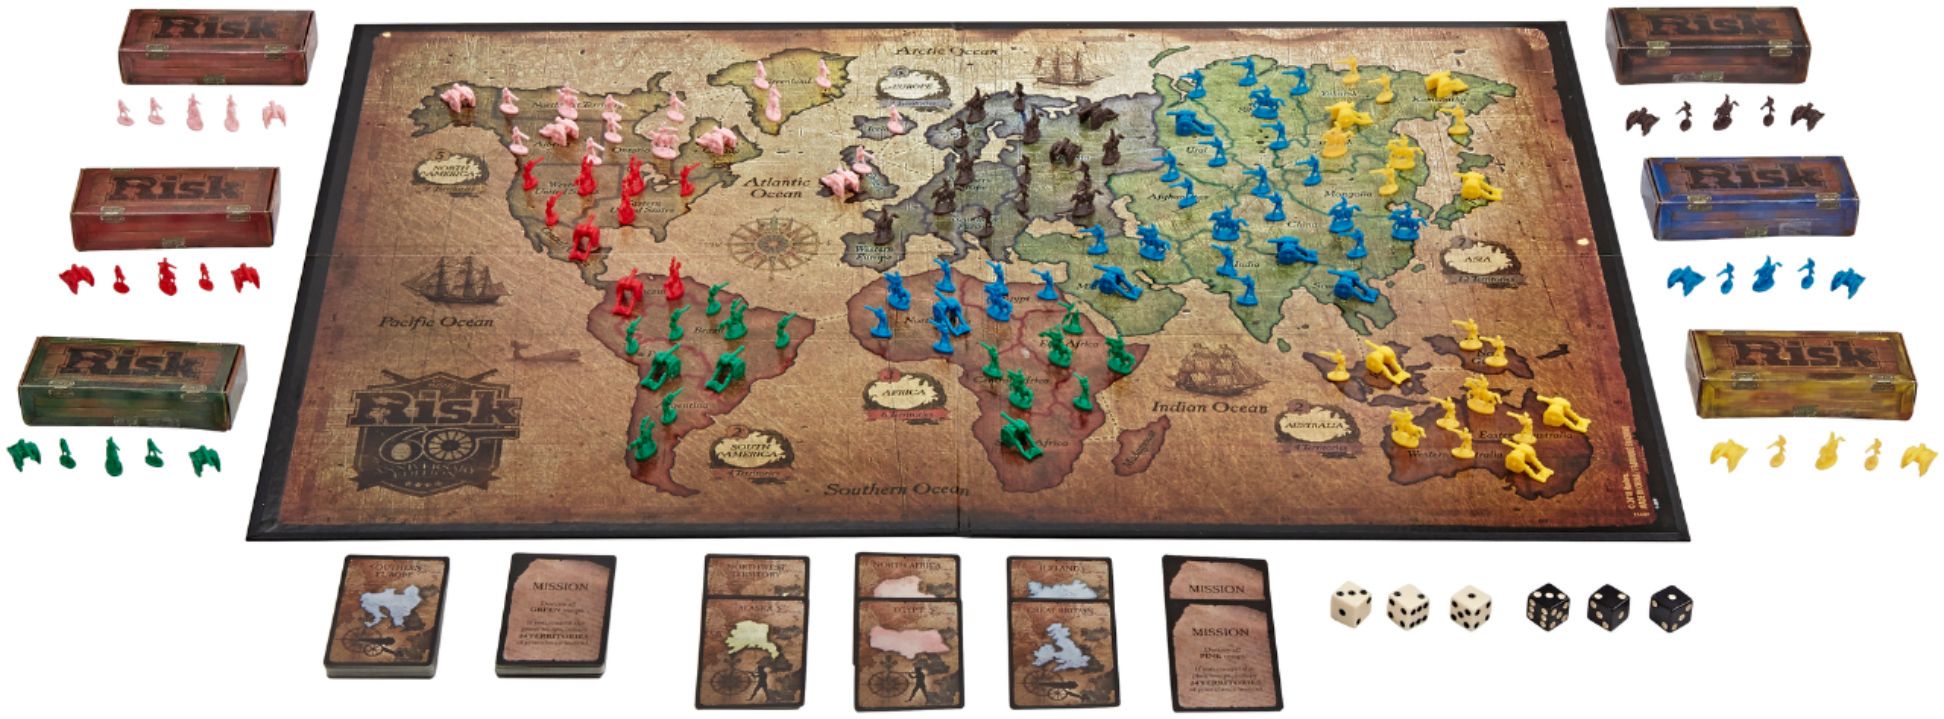 Risk - 60th Anniversary Edition Board Game